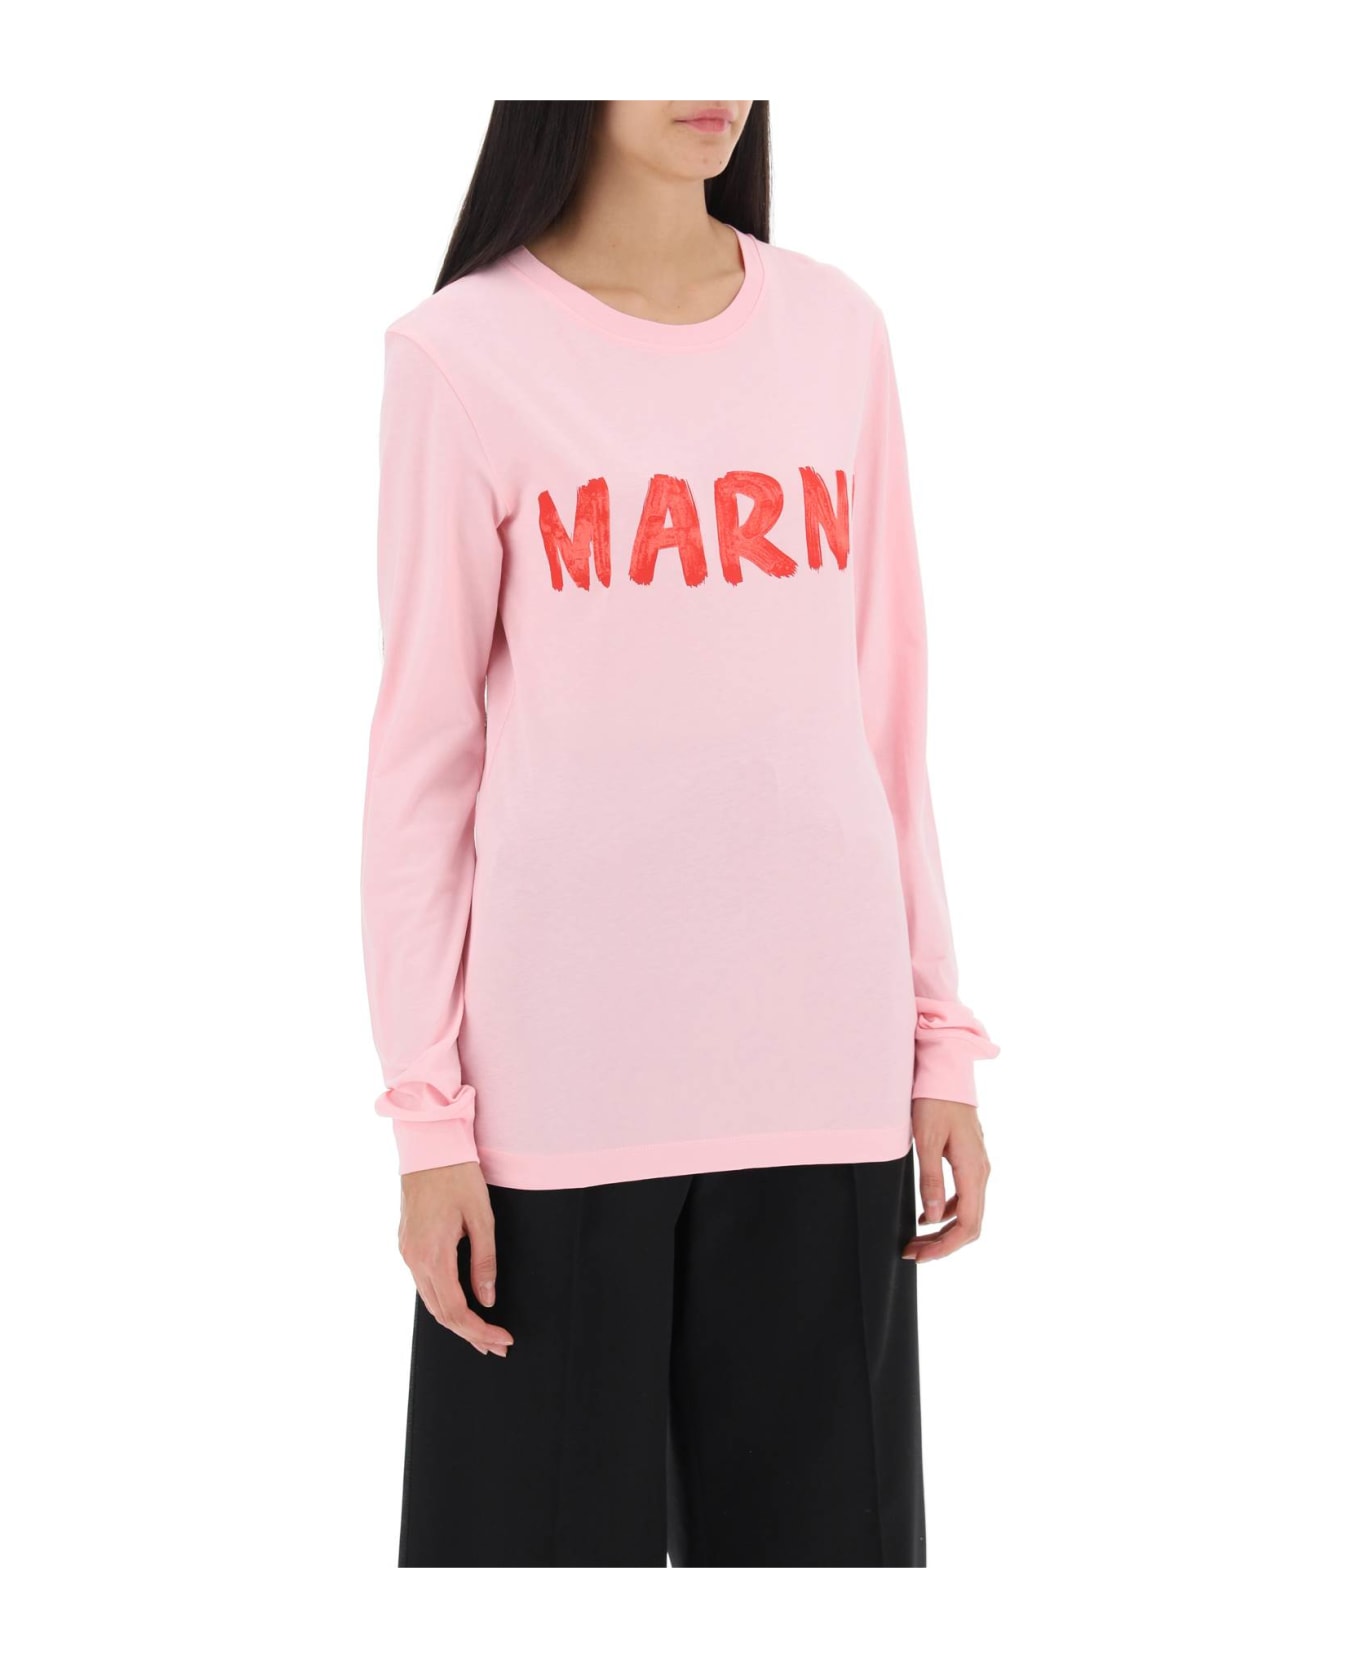 Marni Logo T-shirt - Pink Tシャツ